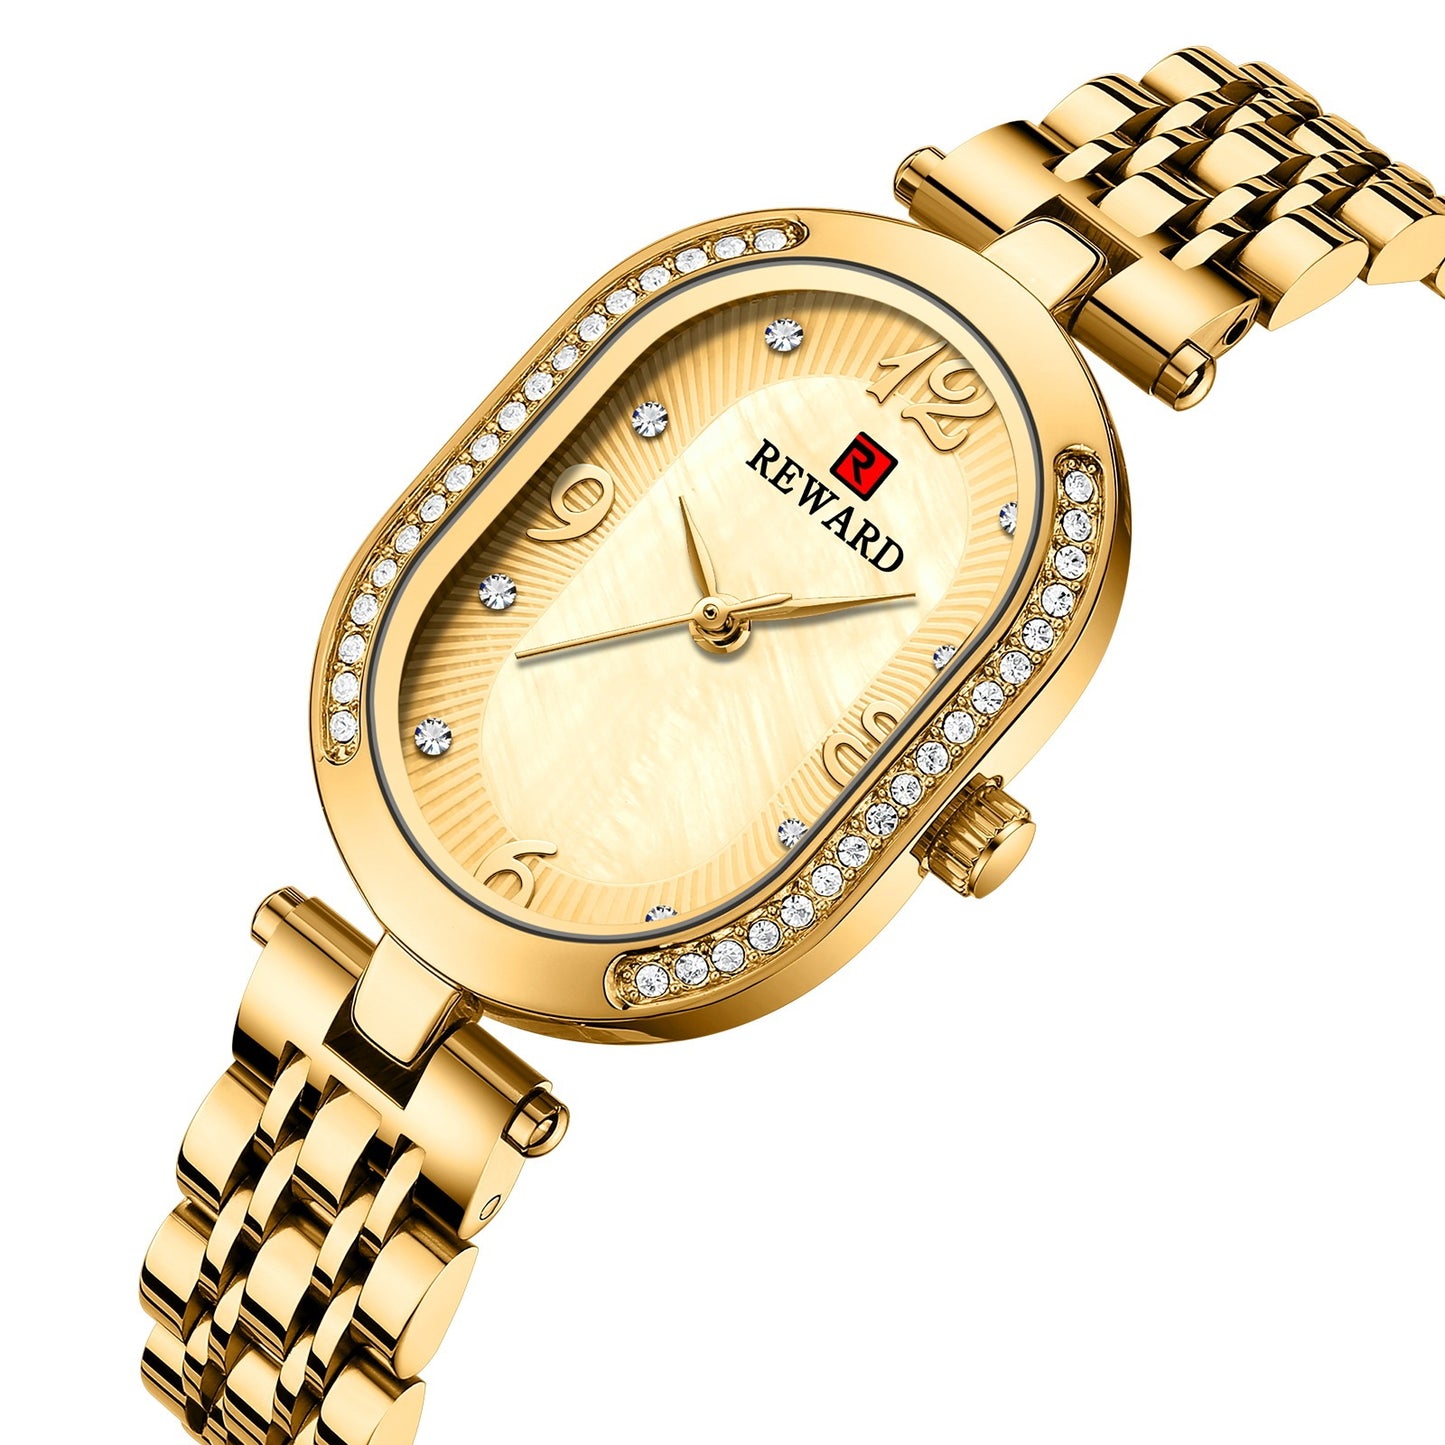 Elegant Lady Watch With Diamonds